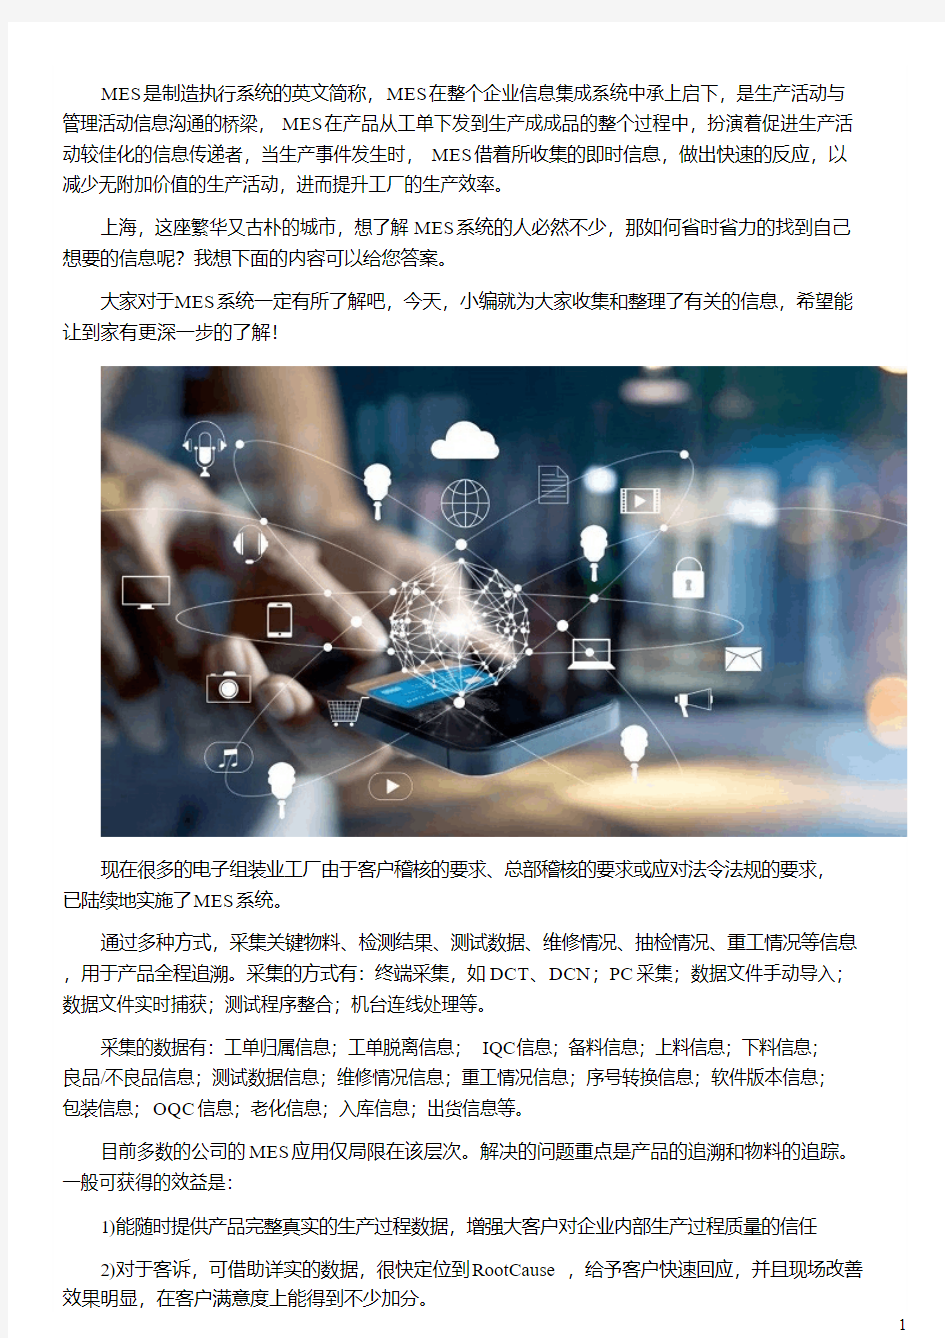 上海电子行业MES系统的数据采集功能应用